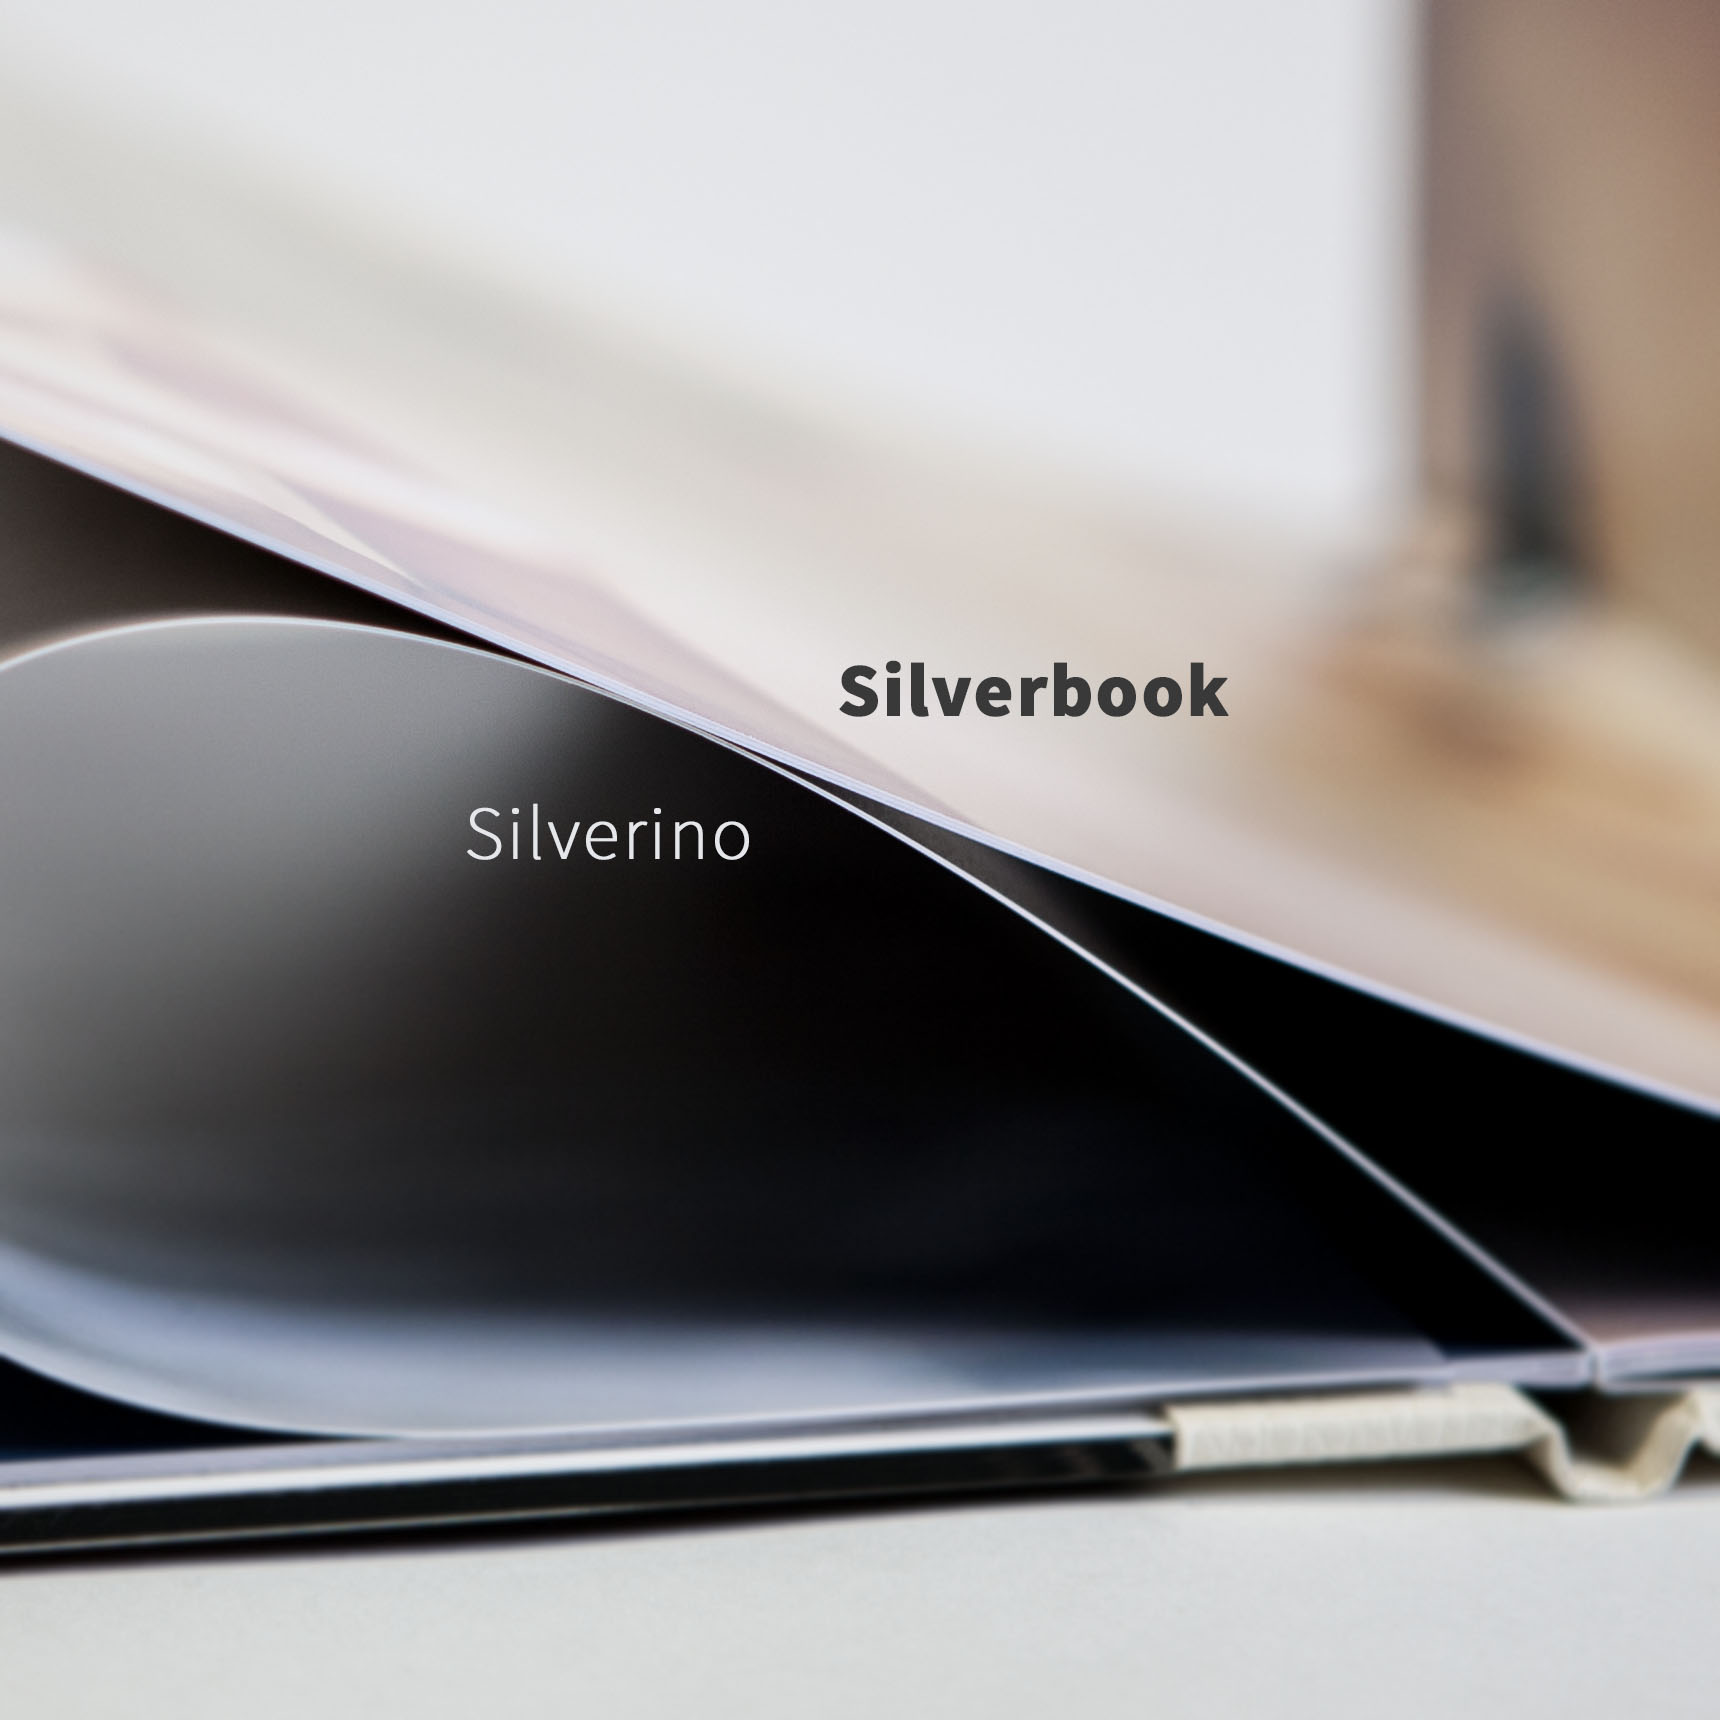 Fotobuch Vergleich - unser Silverbook und Silverino.